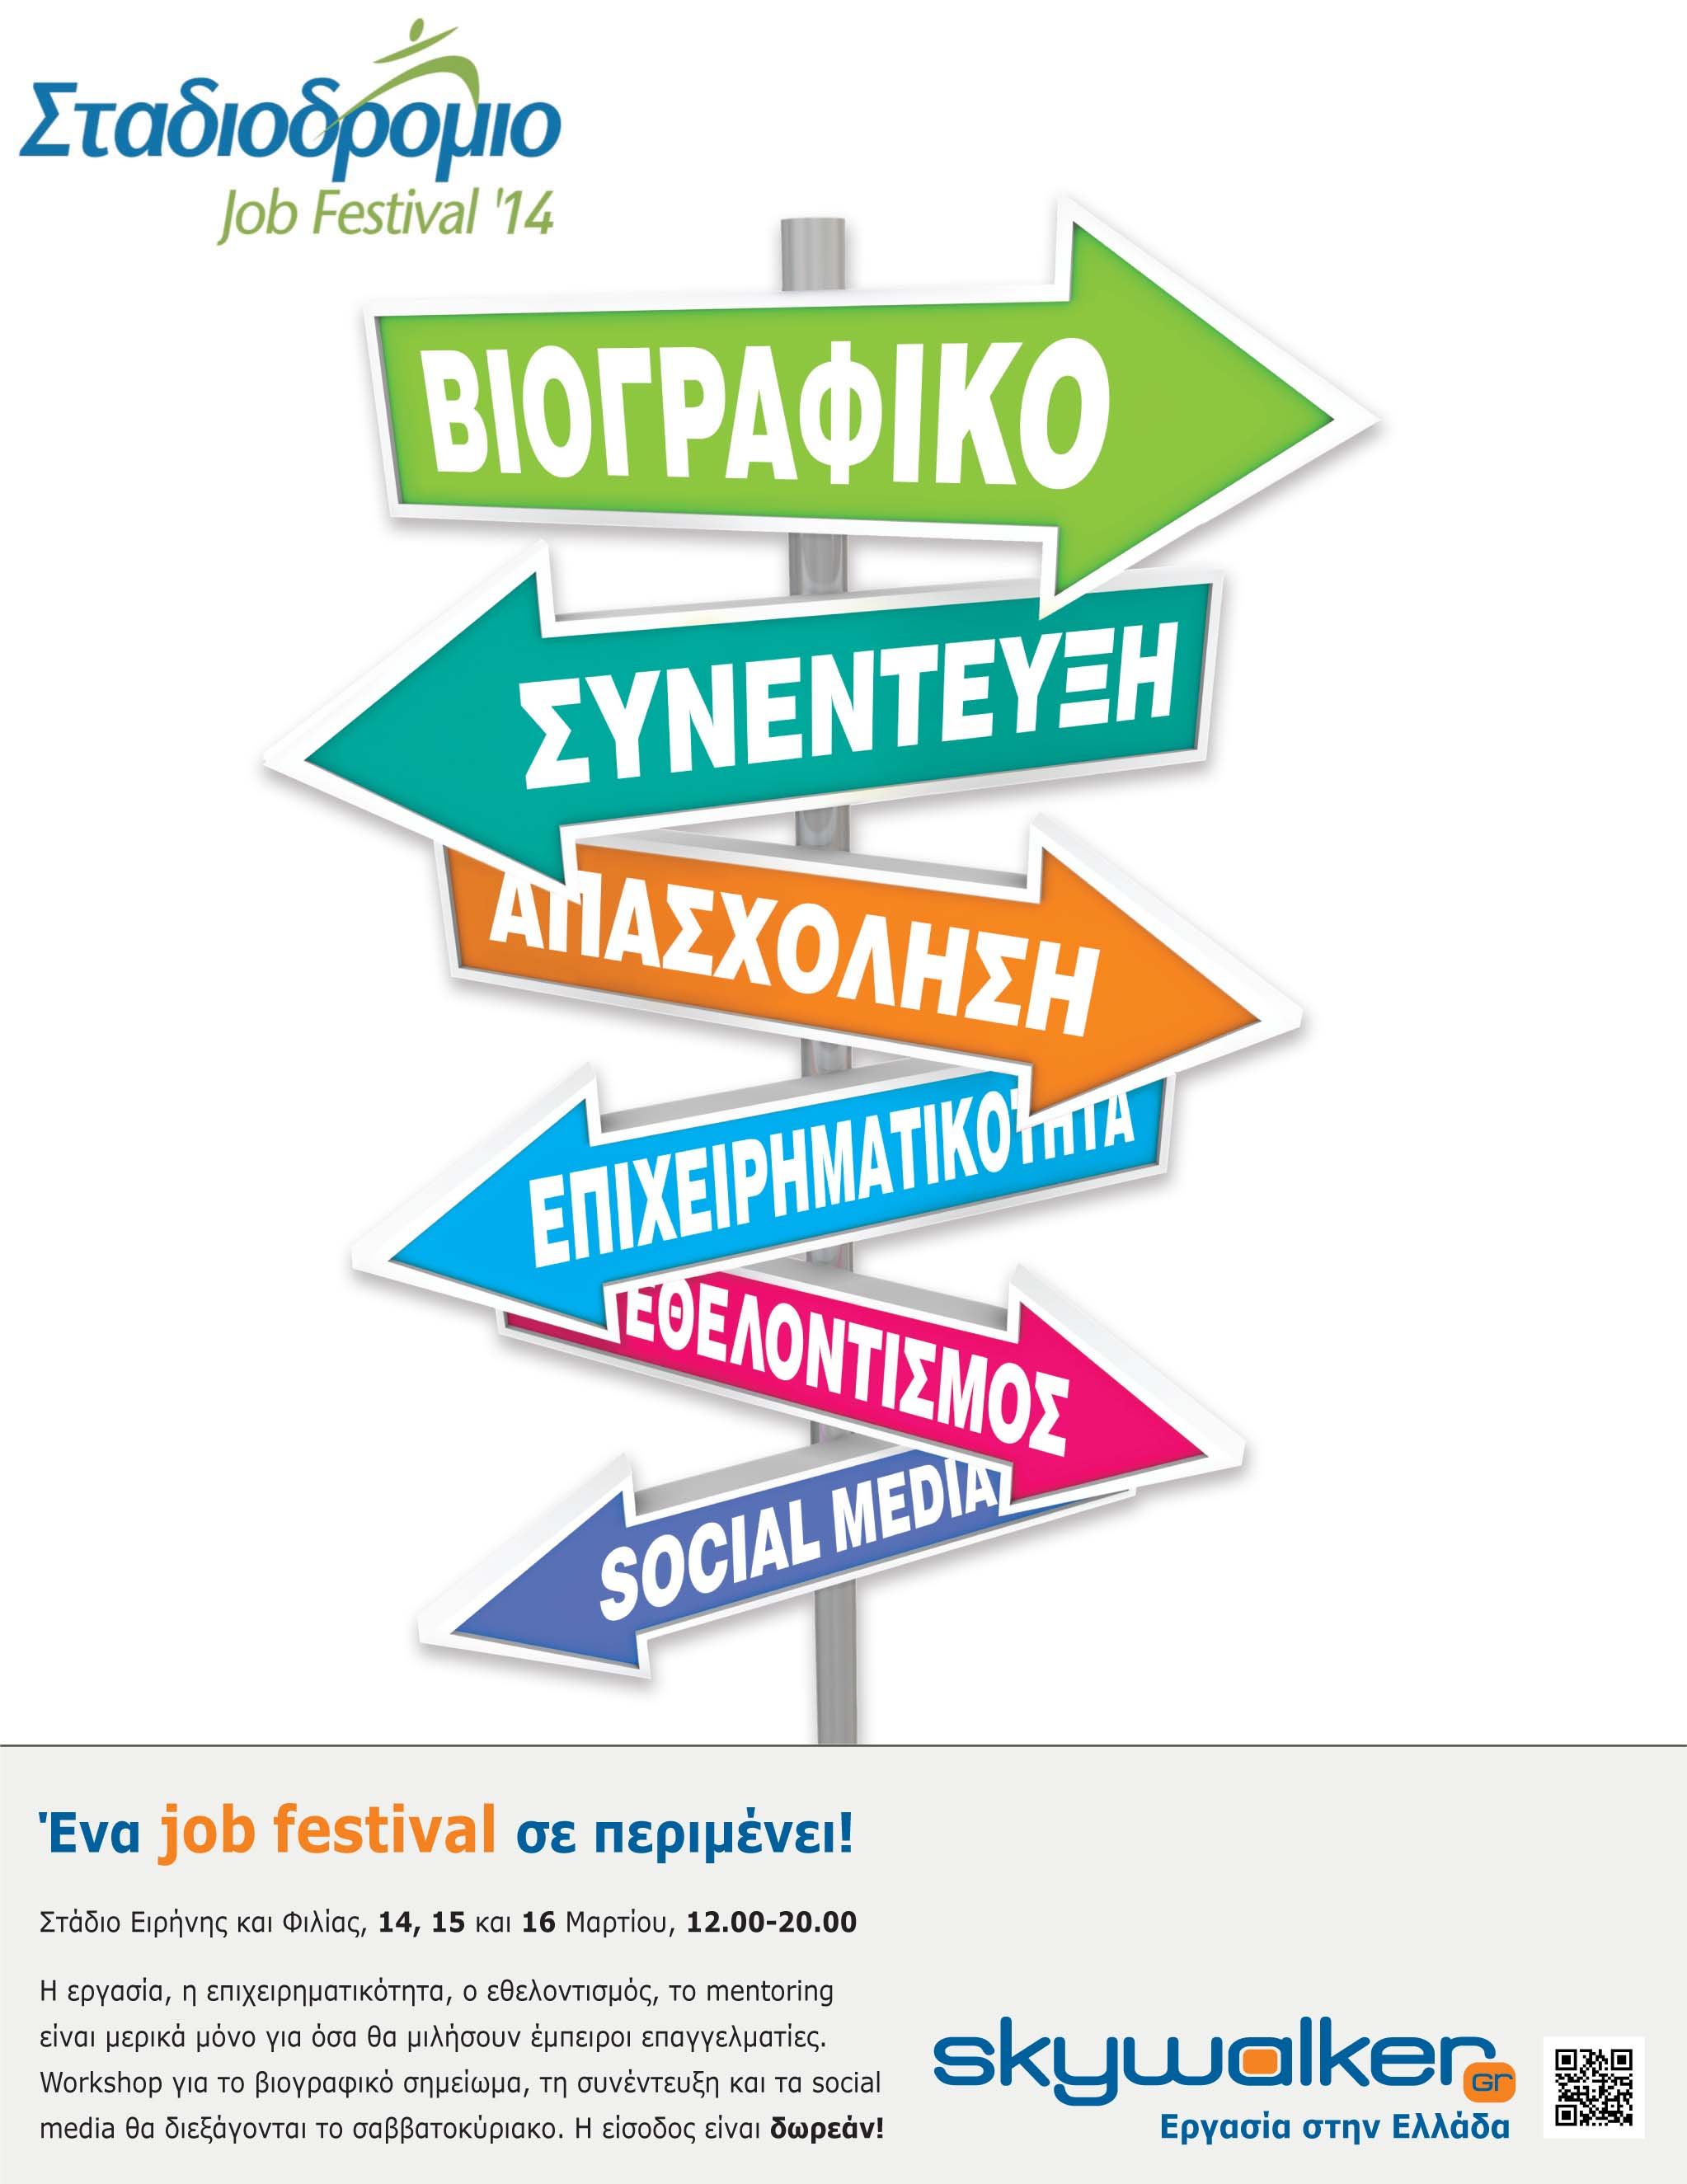 ΣΤΑΔΙΟΔΡΟΜΙΟ 2014 – job festival 14 Μαρτίου